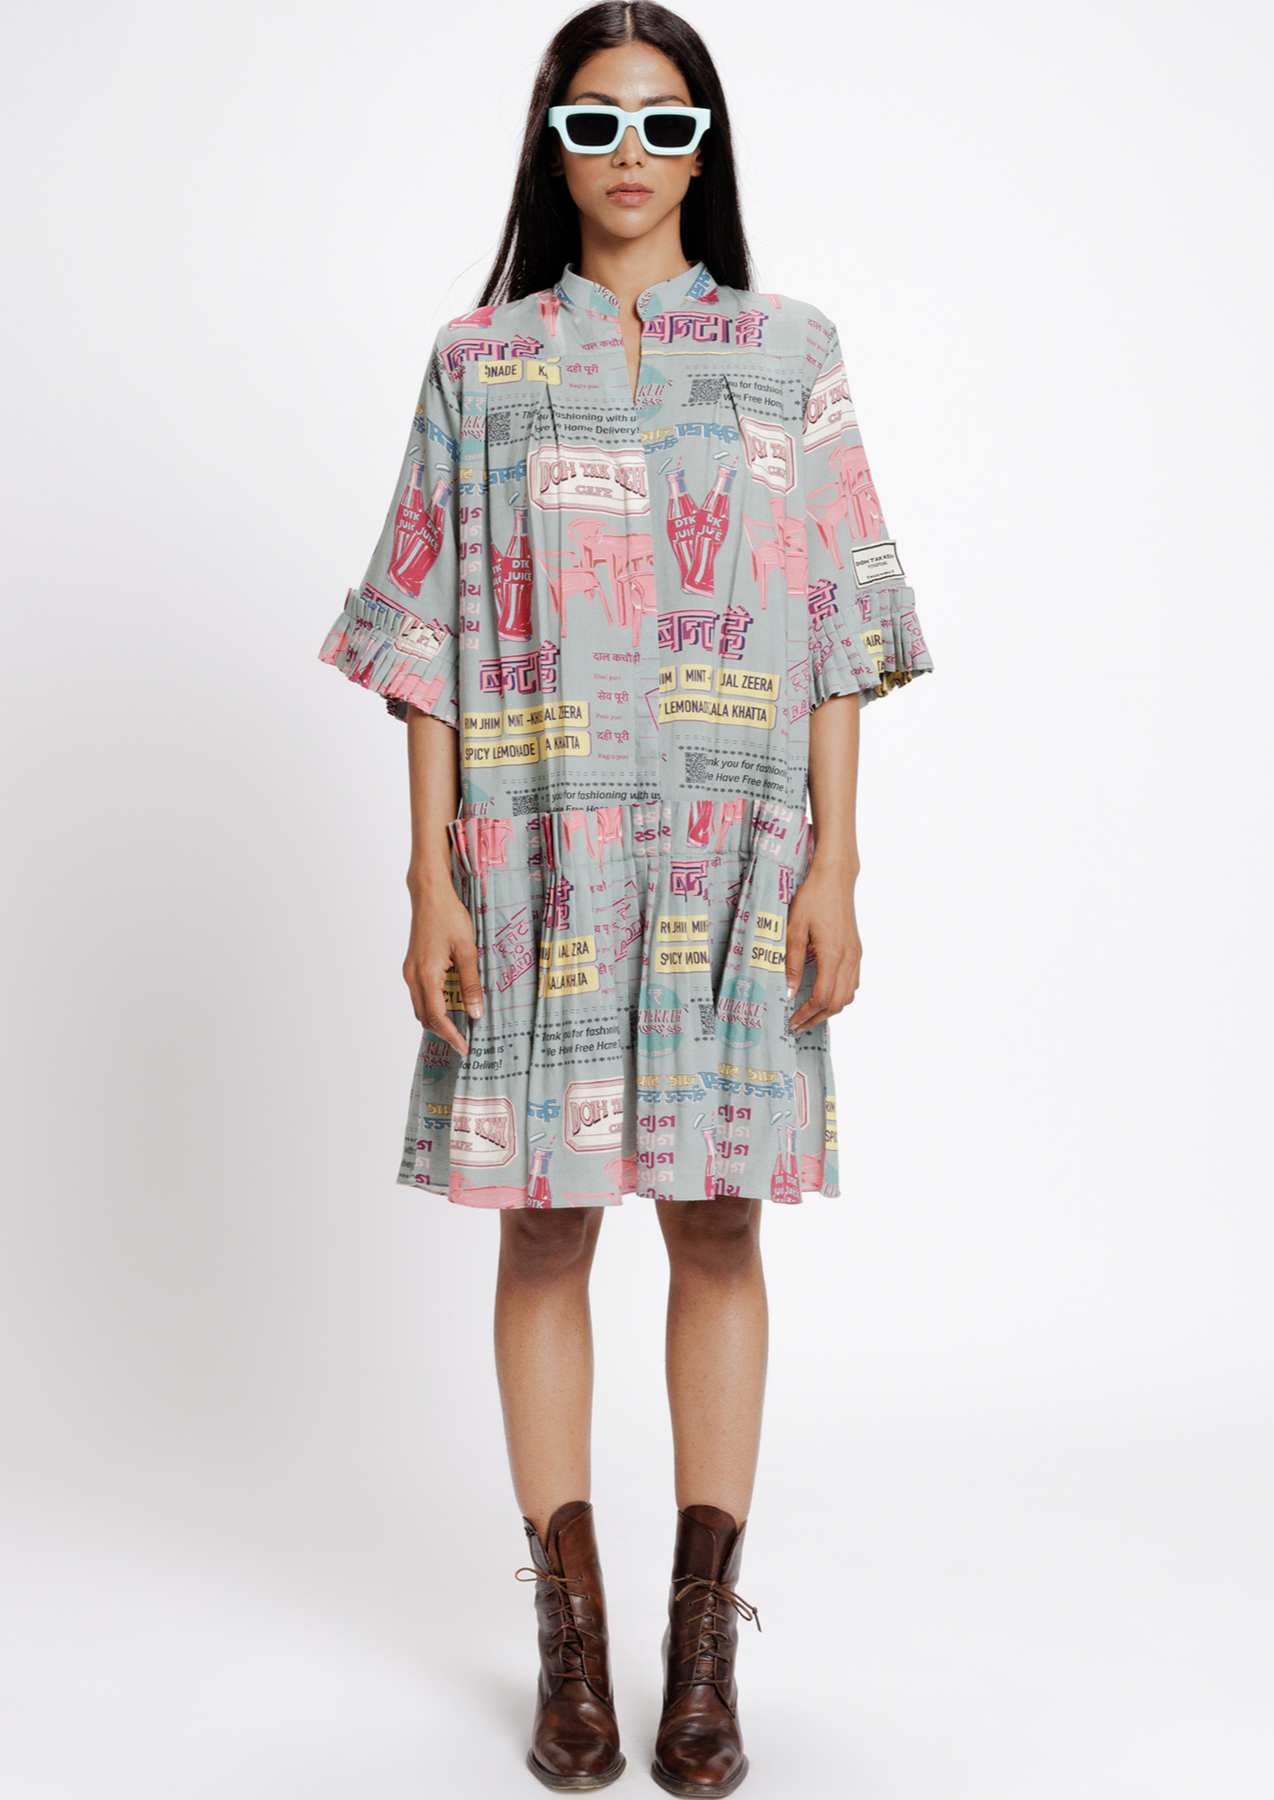 BANTAI SHIRT DRESS, a product by Doh tak keh